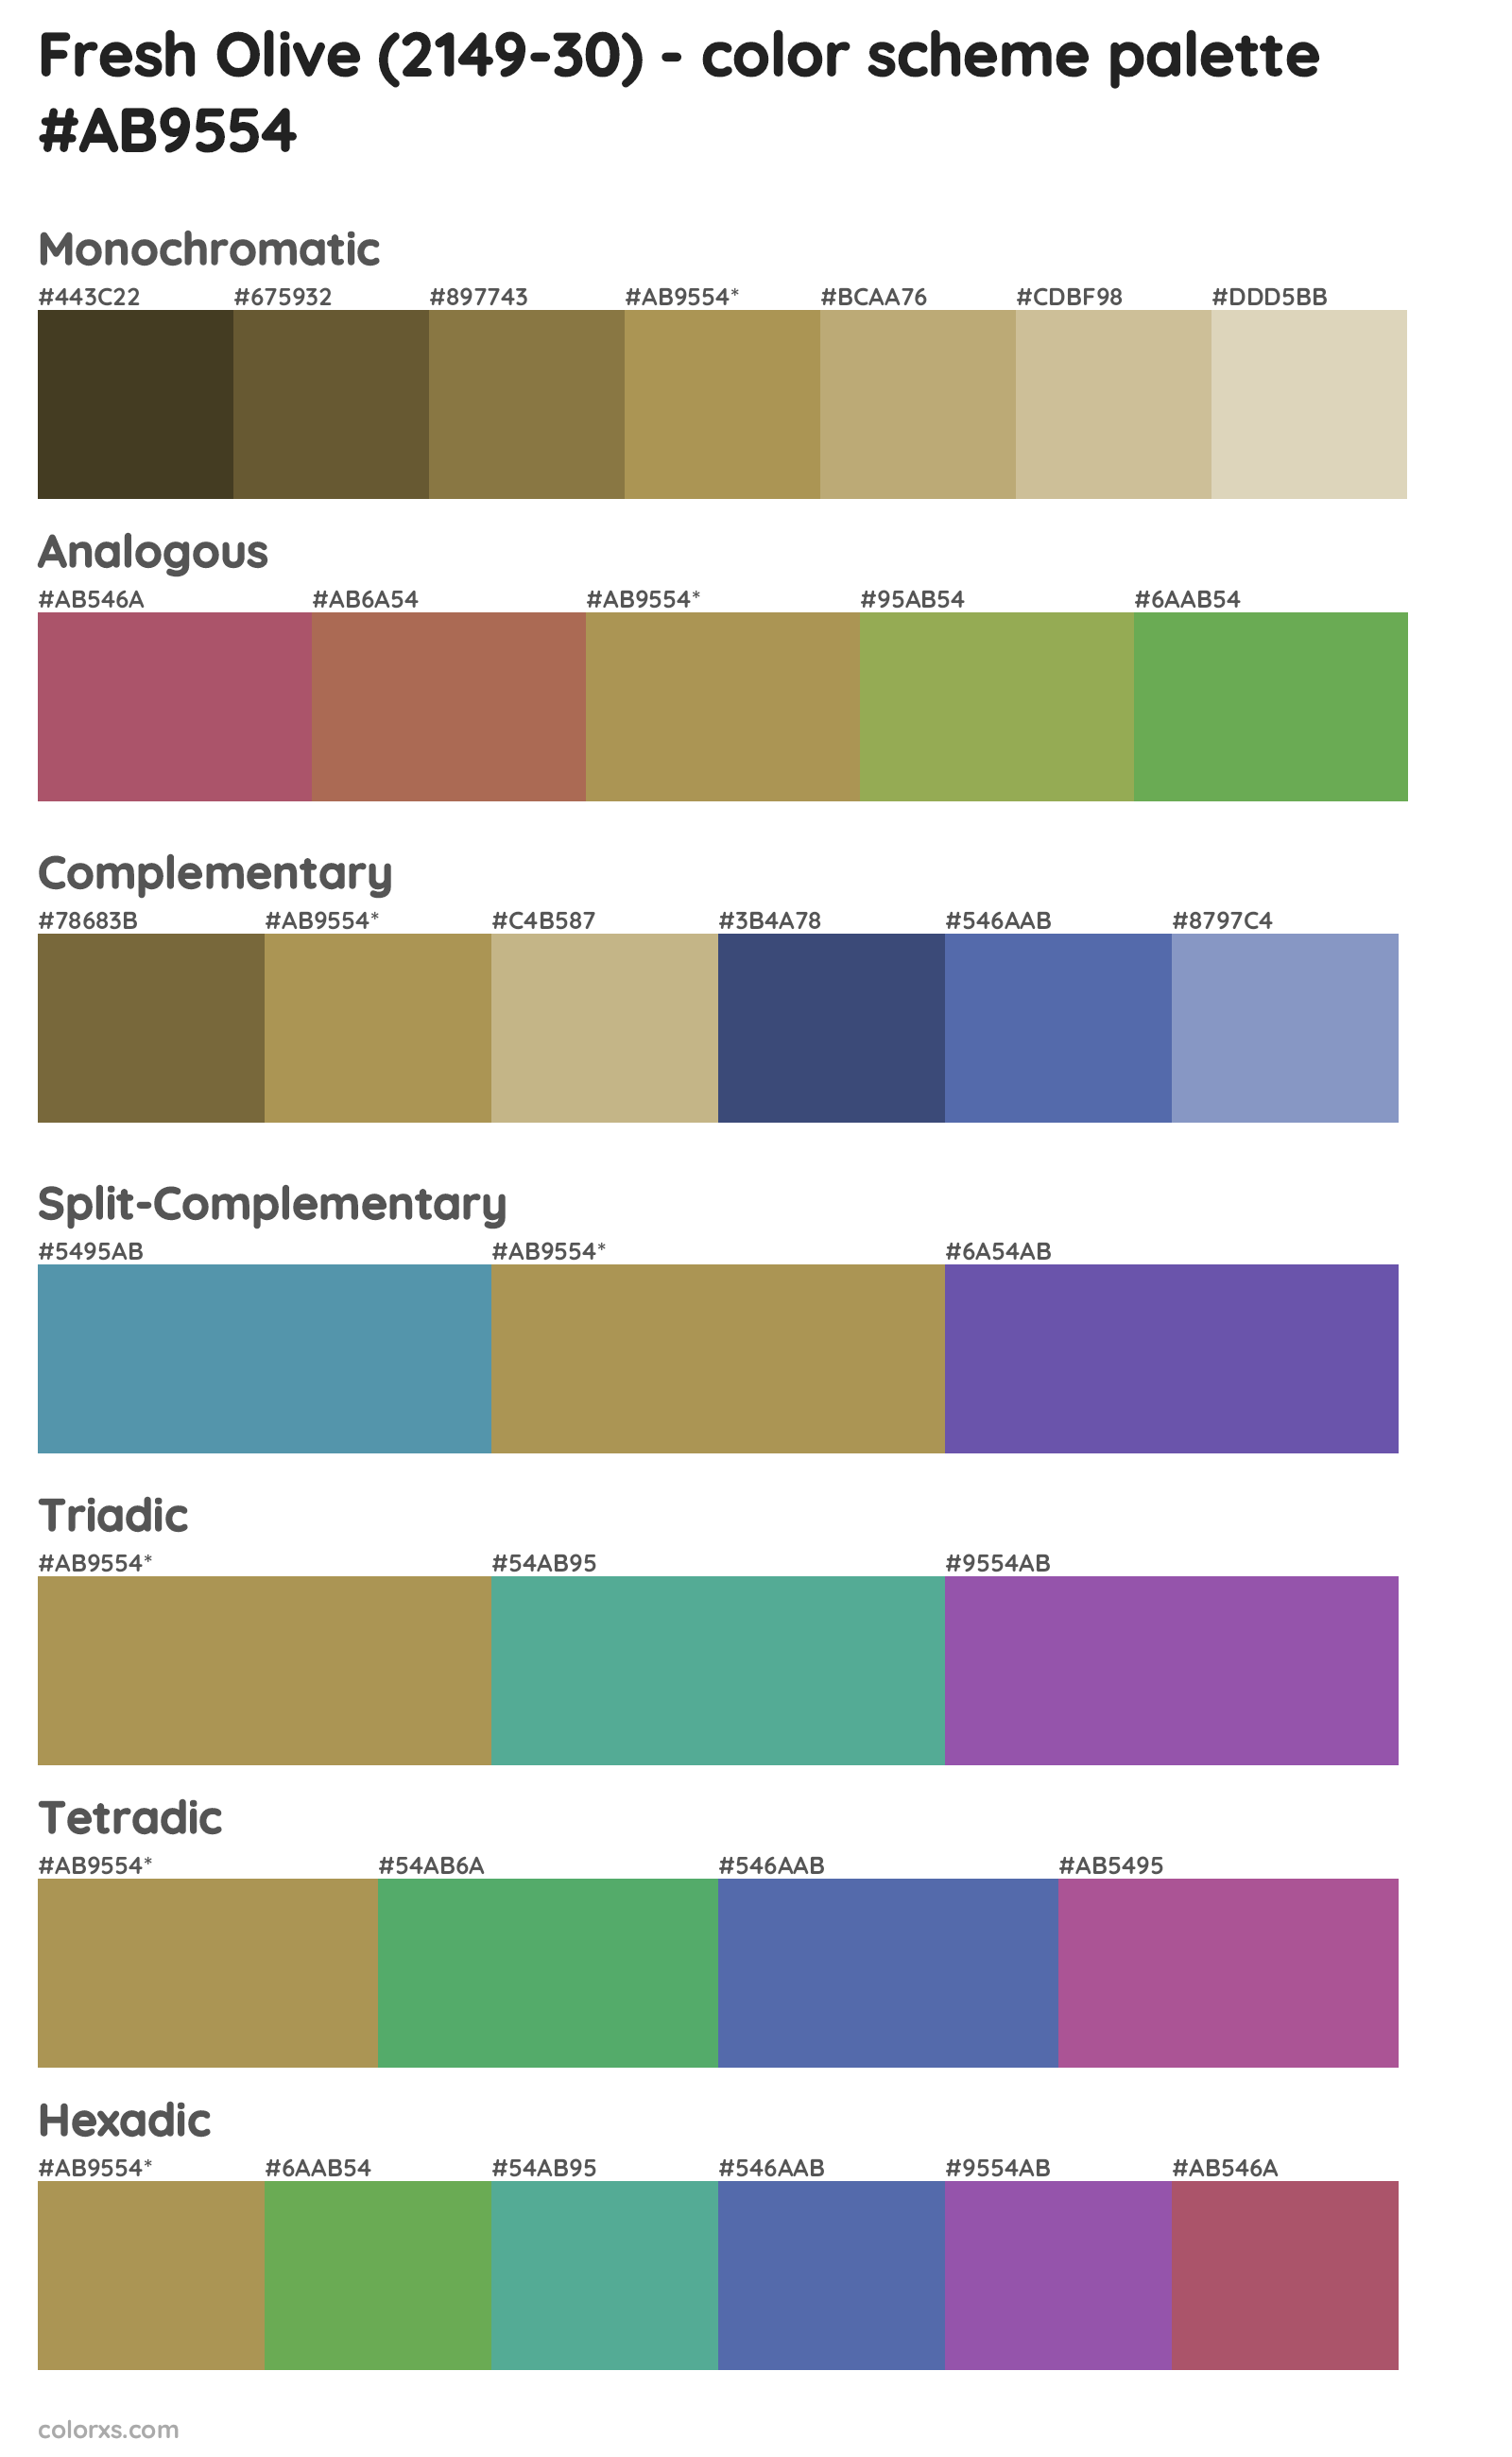 Fresh Olive (2149-30) Color Scheme Palettes